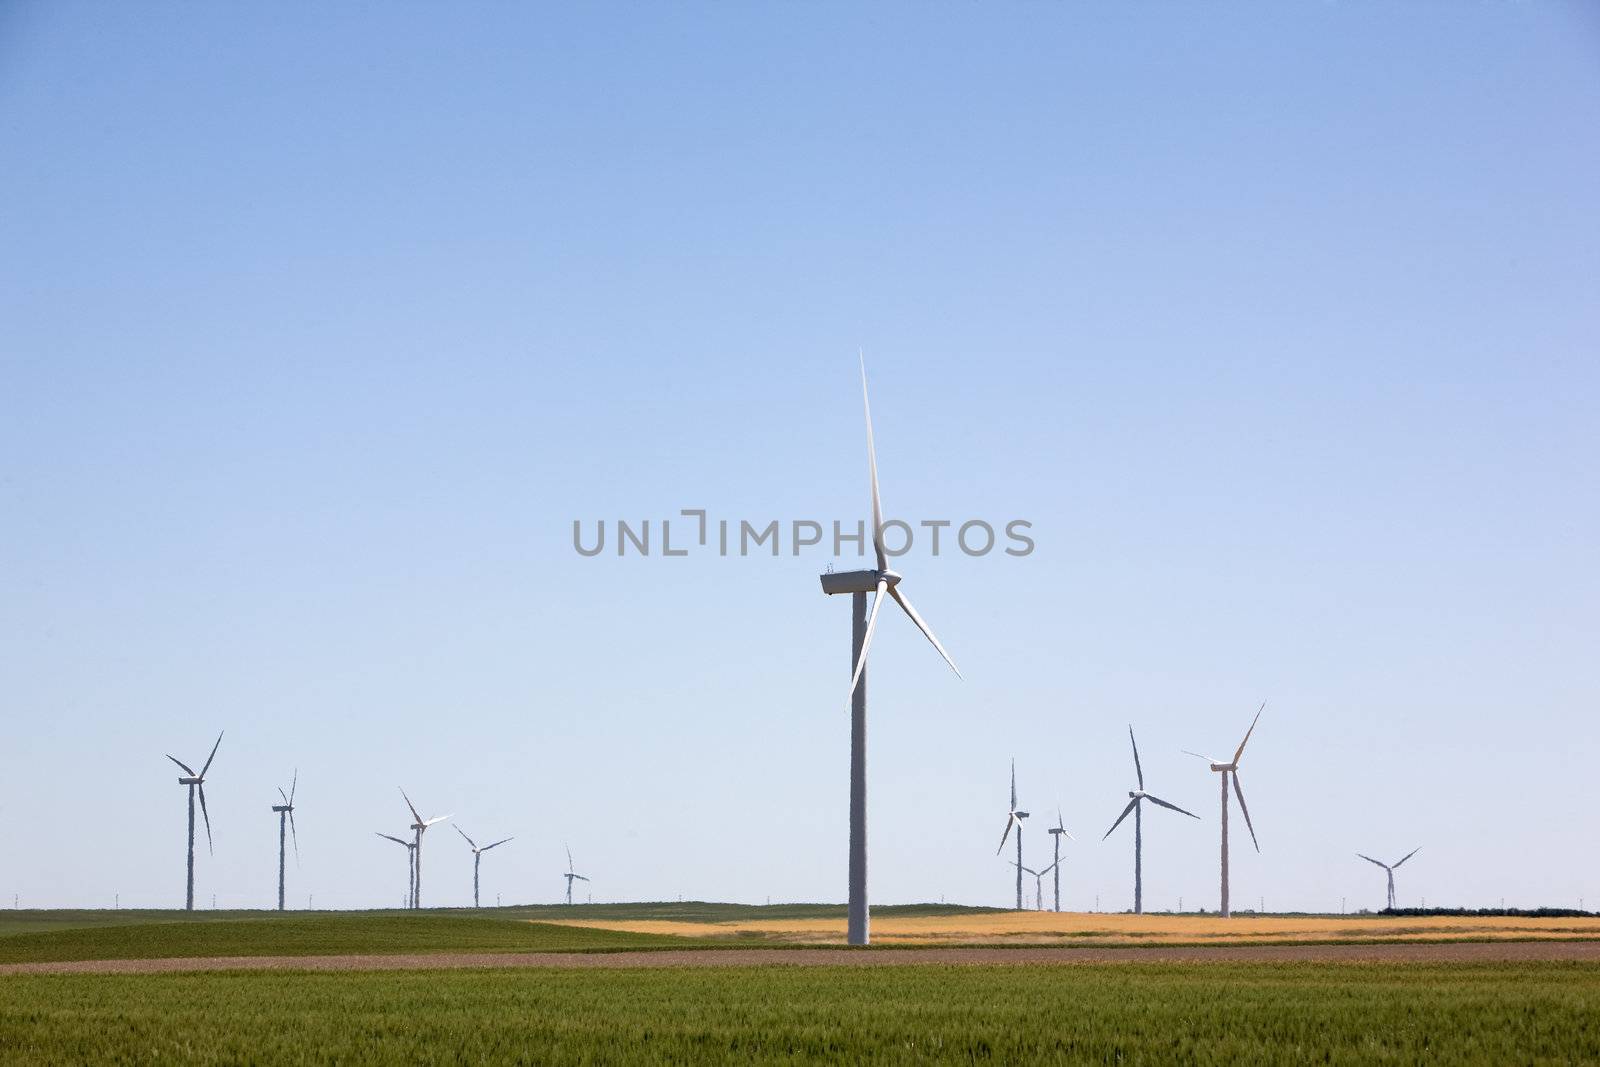 A wind turbine farm on the beautiful prairies